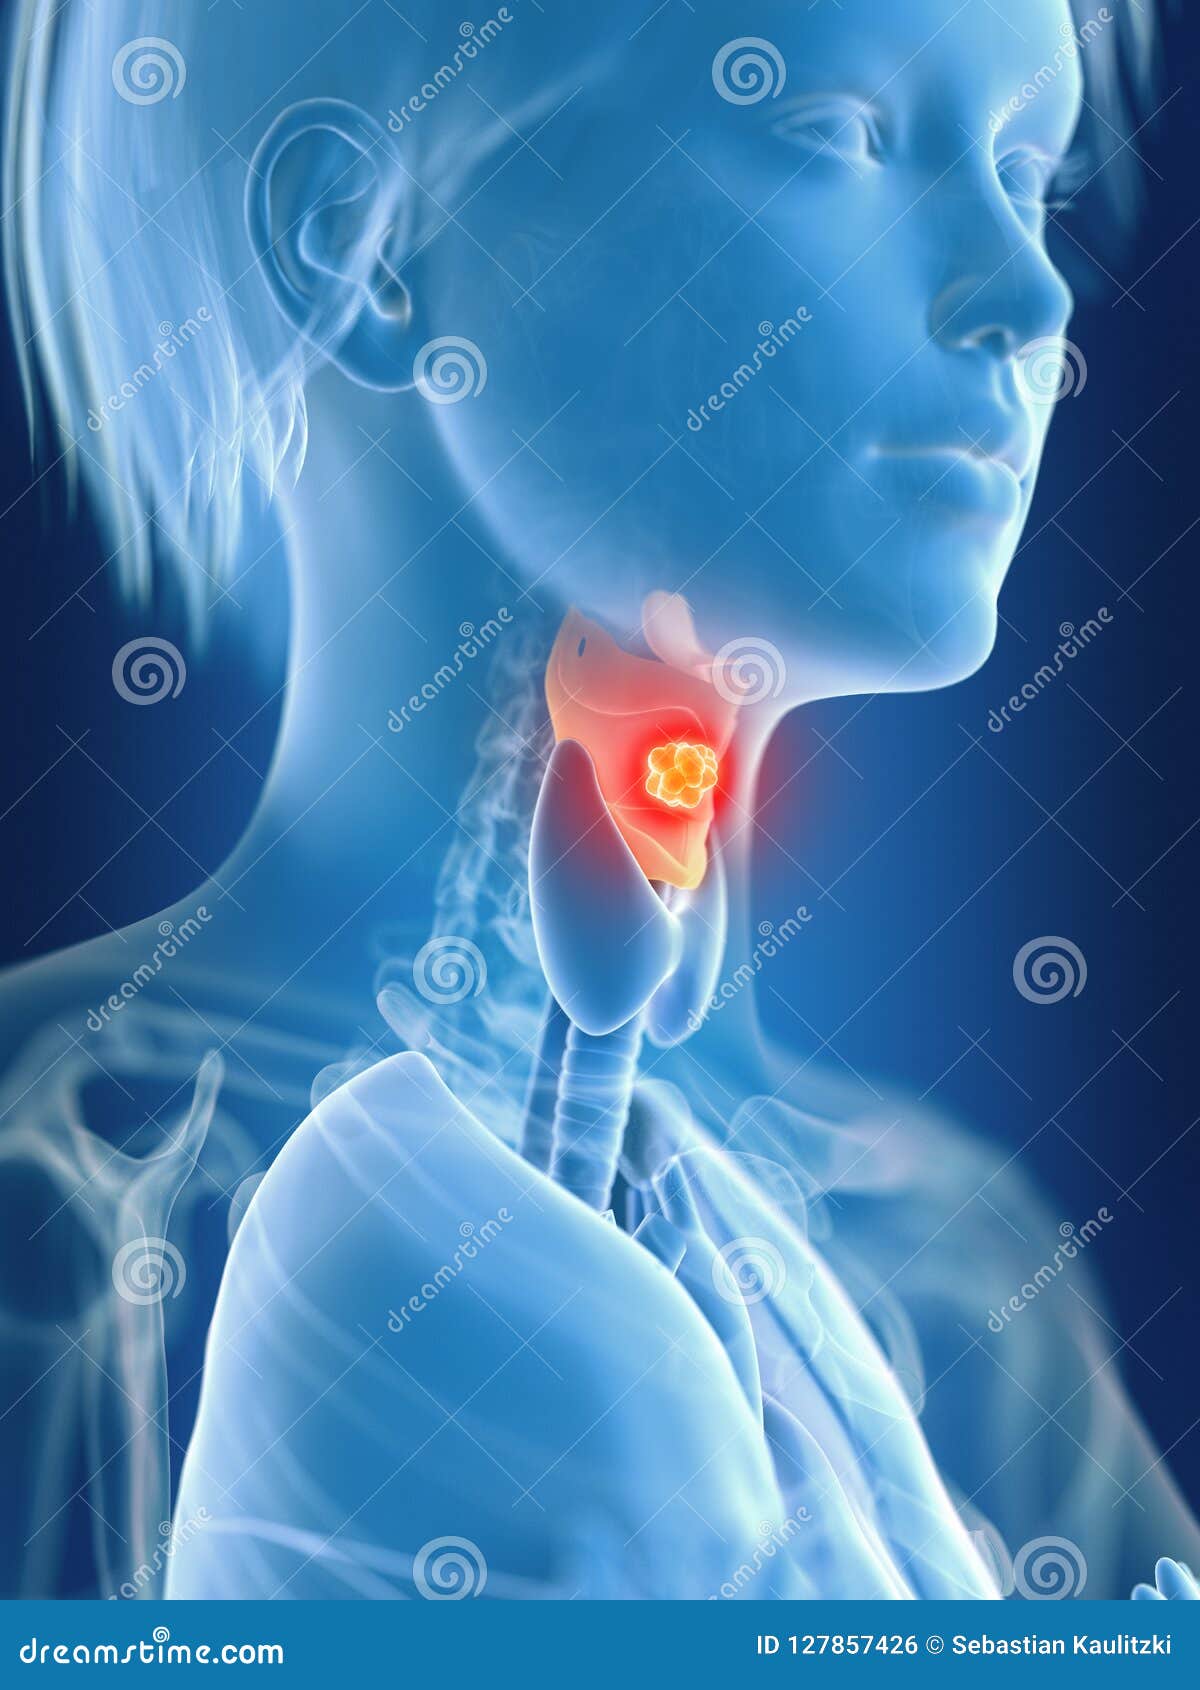 a females larynx cancer